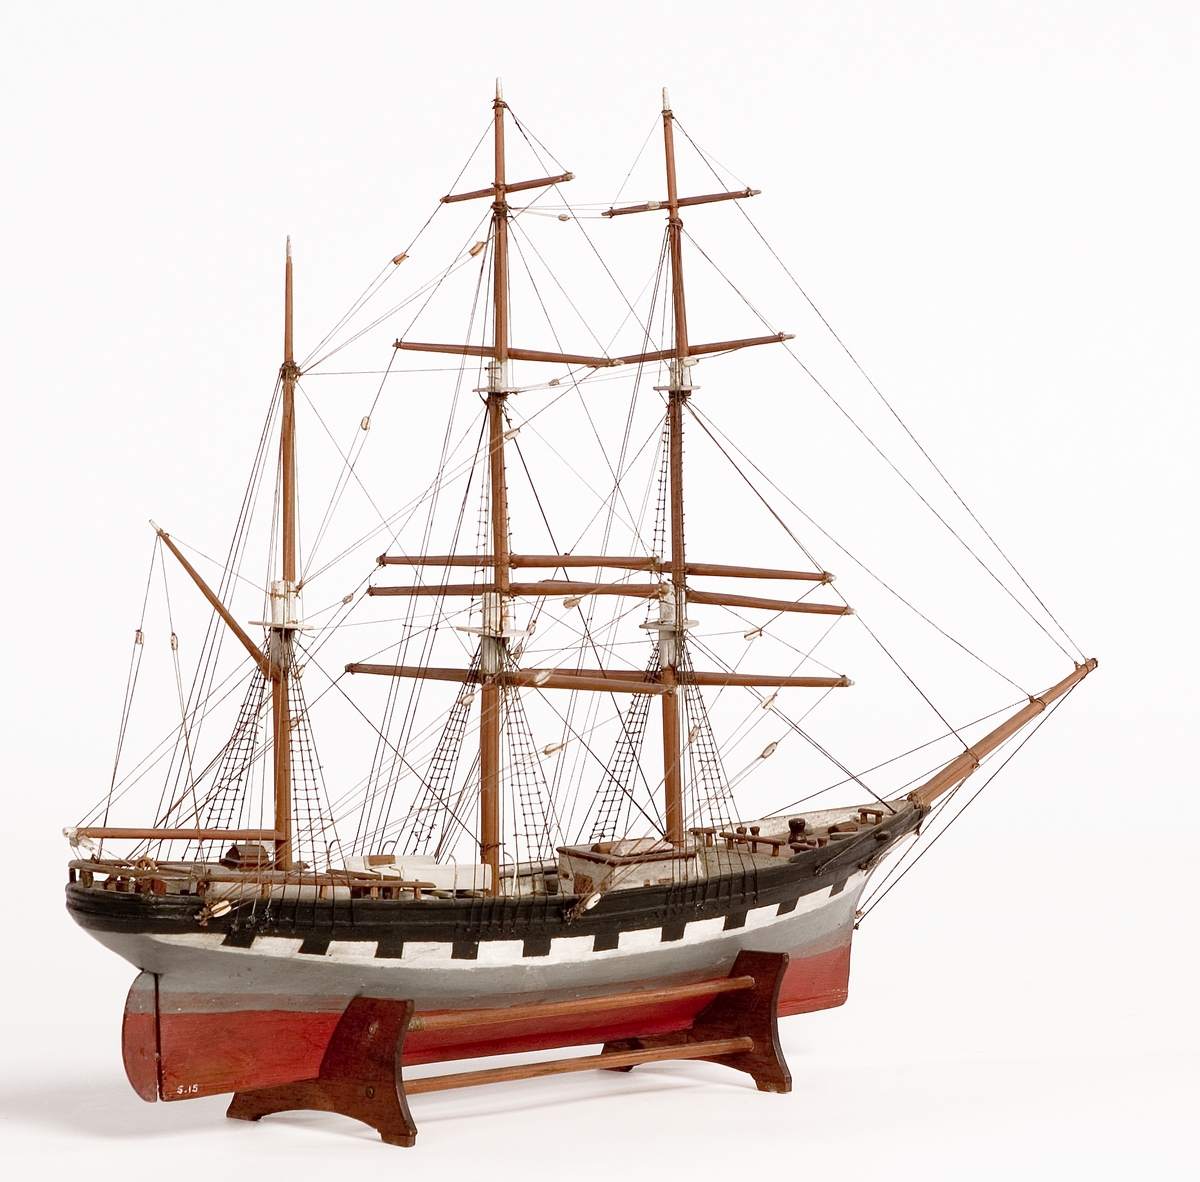 Modell av tremastad bark, handelsfartyg.
Skrå av teak.